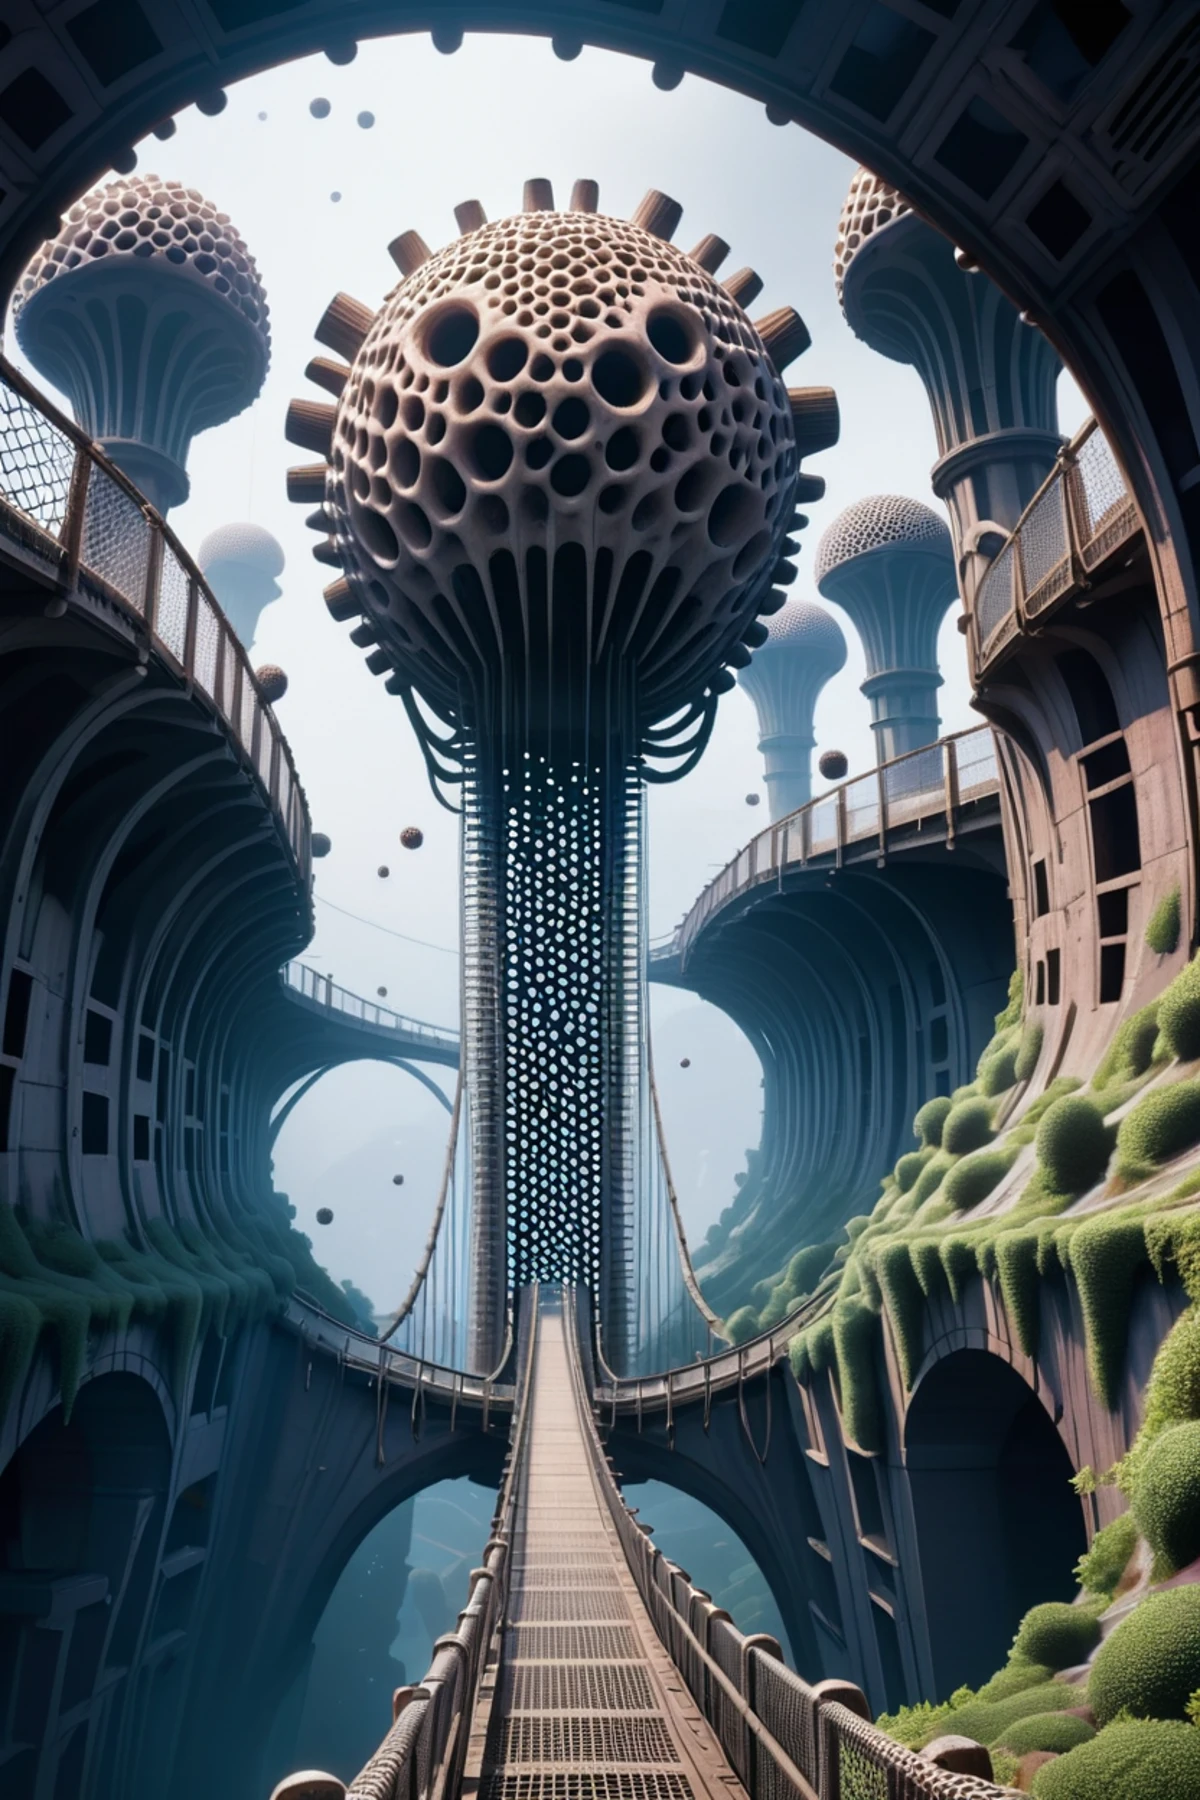 tripofobia, ponte suspensa em um abandonado,metrópole fantasmagórica de ficção científica à beira de um penhasco fora do universo, Obra de arte